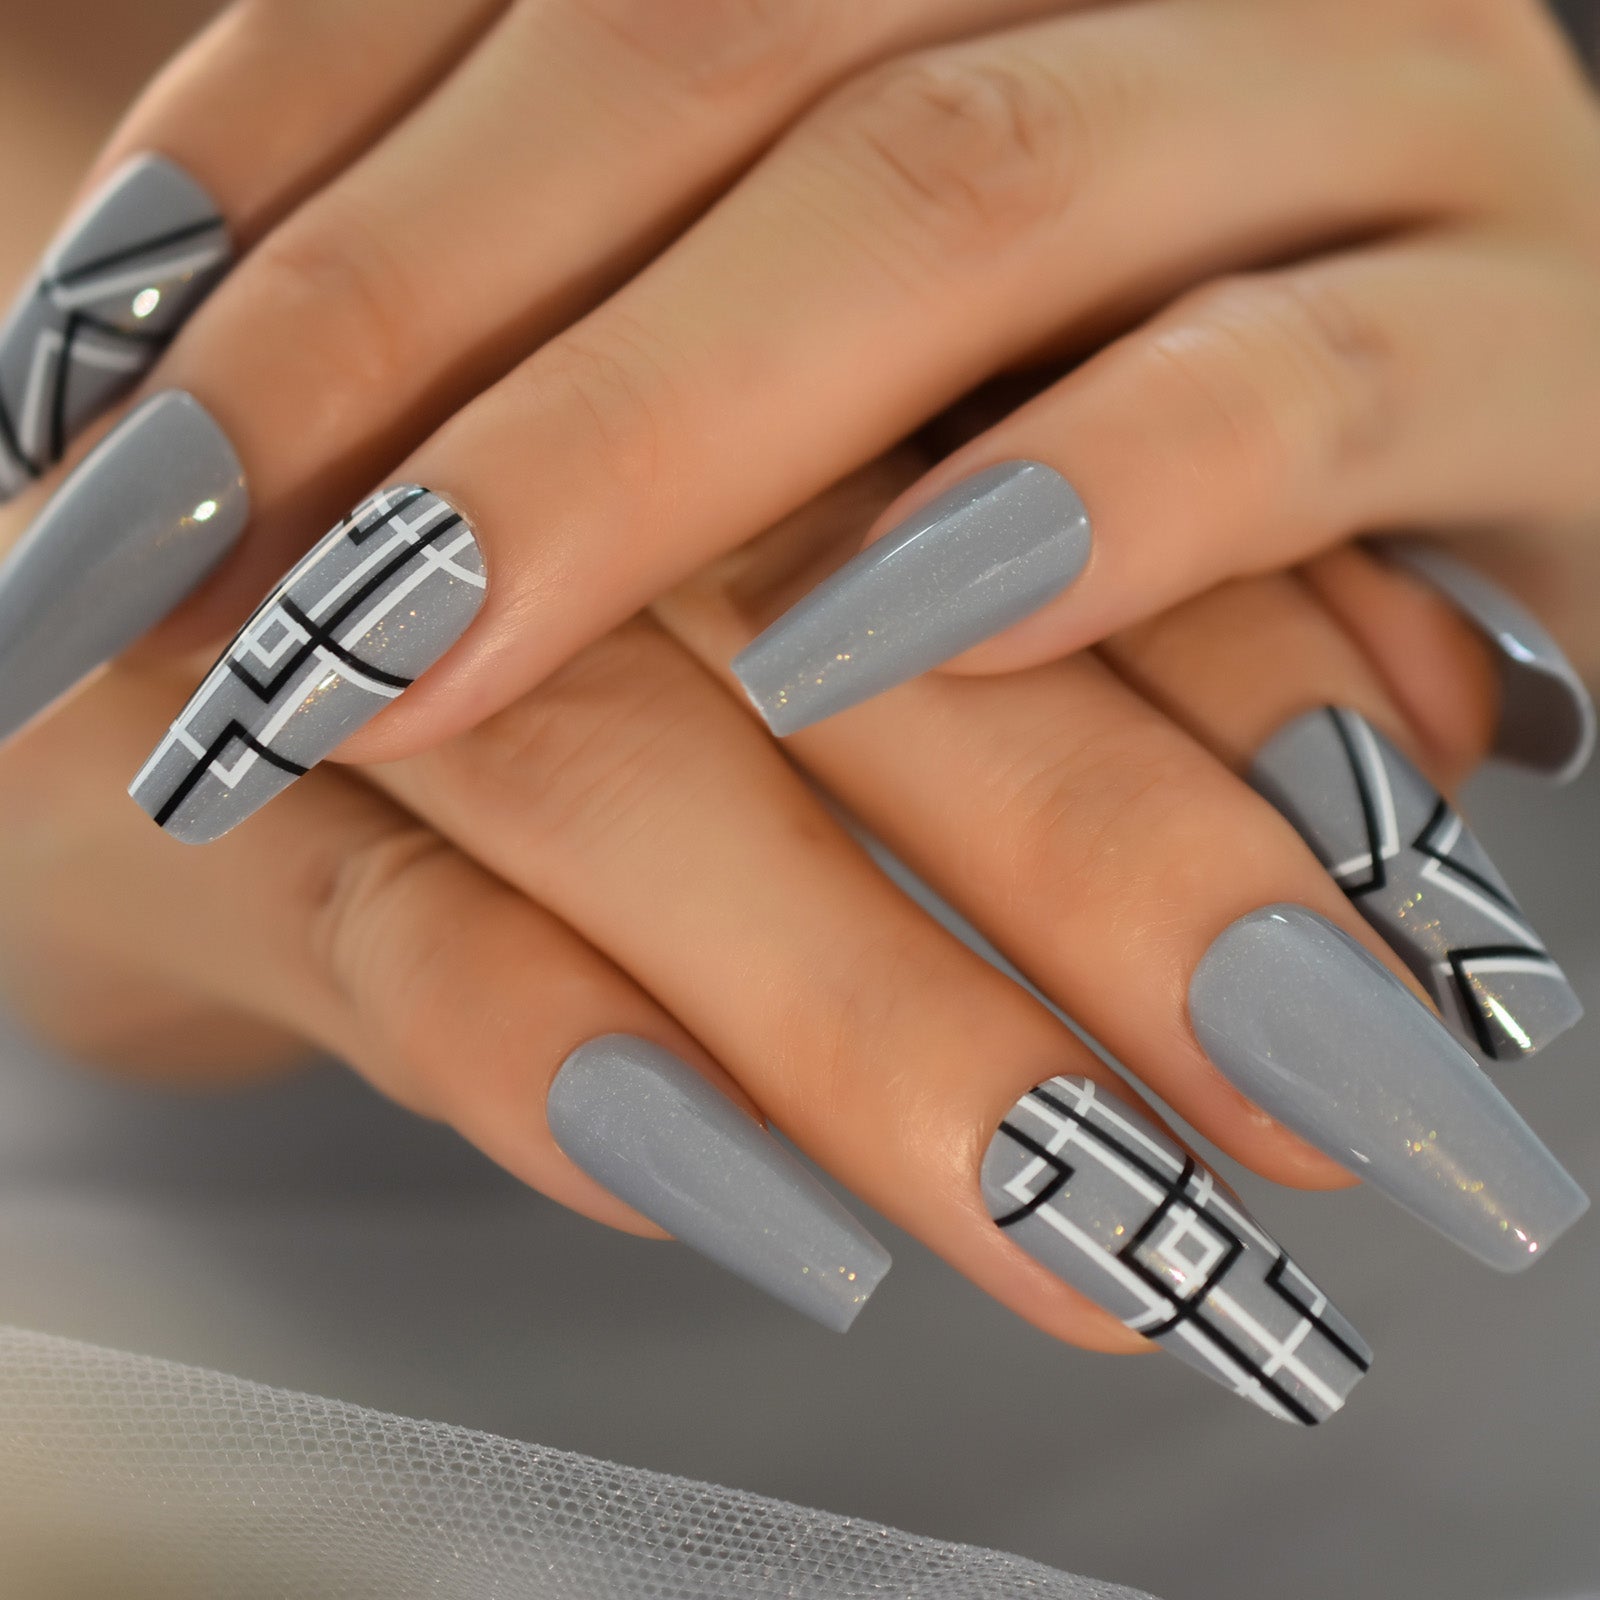 amazing nail art designs ideas #modèles vernis à ongles tendances #nailart  #gel nails - YouTube